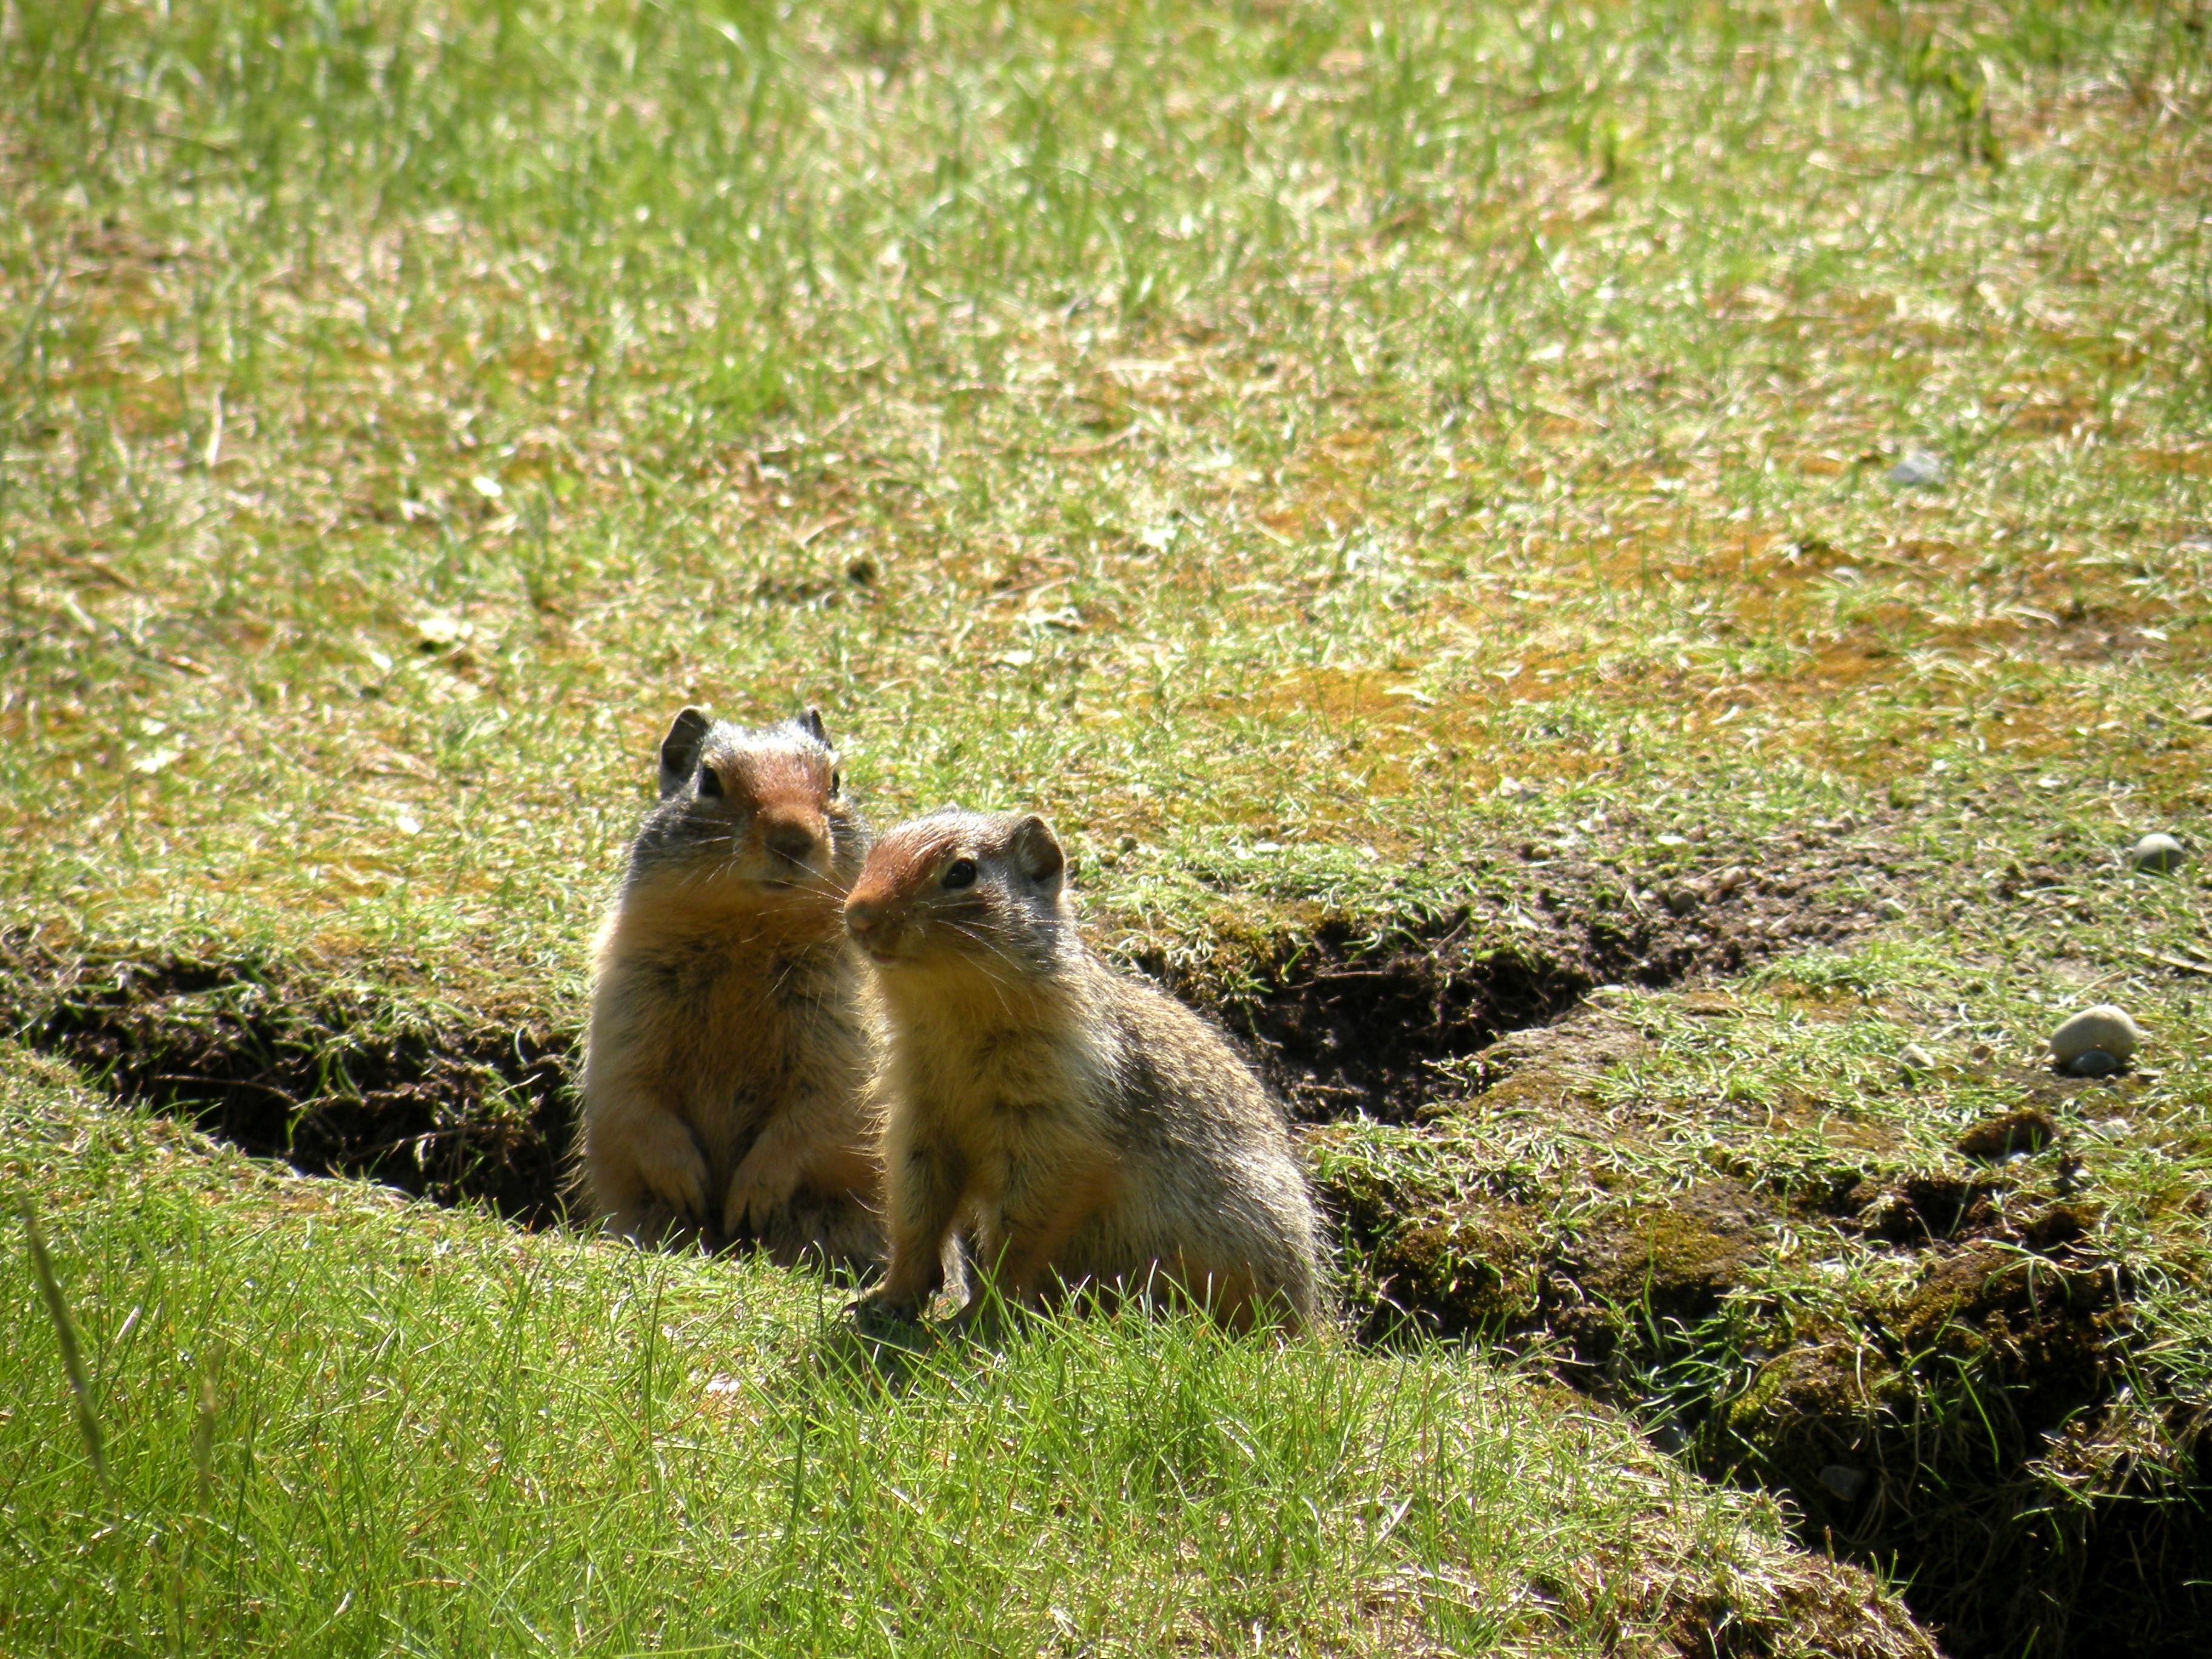 Columbian Ground Squirrels, Banff National Park, Canada, 2010, taken by Martha Wiggins